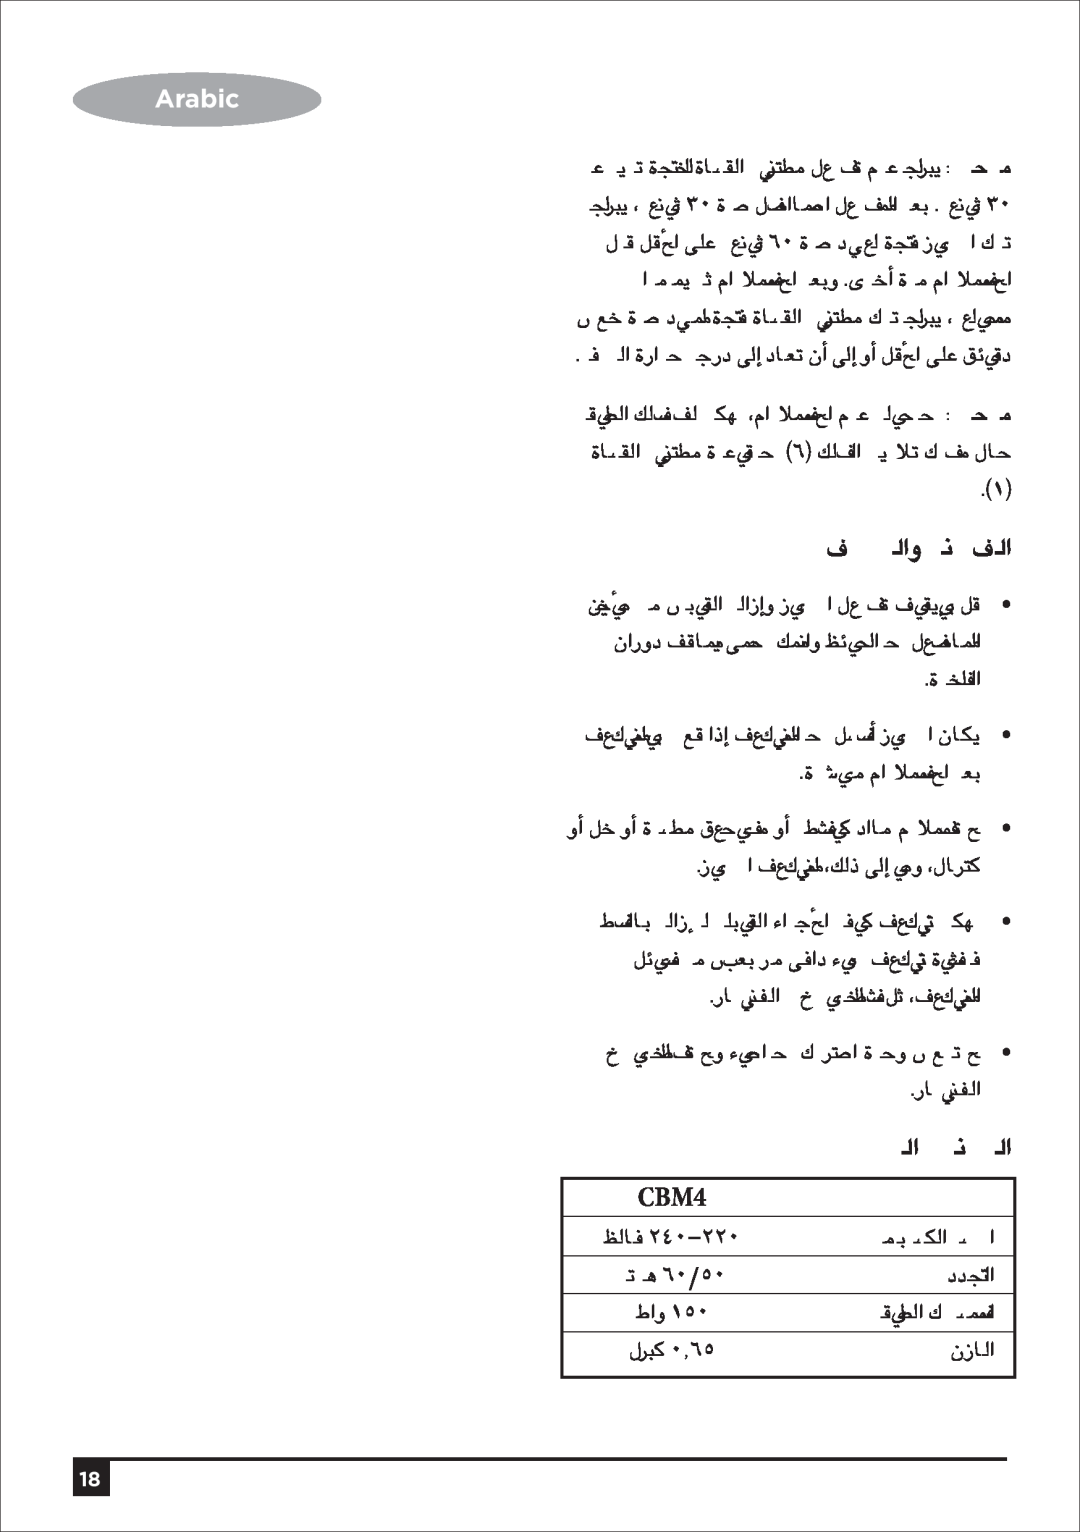 Black & Decker CBM4 manual Arabic, ∞«¶æàdGh áfÉ«üdG, IöTÉÑe ΩGóîàS’G óH, RÉ¡÷G ∞«¶æàd ,∂dP ¤EG Éeh , ƒëc 